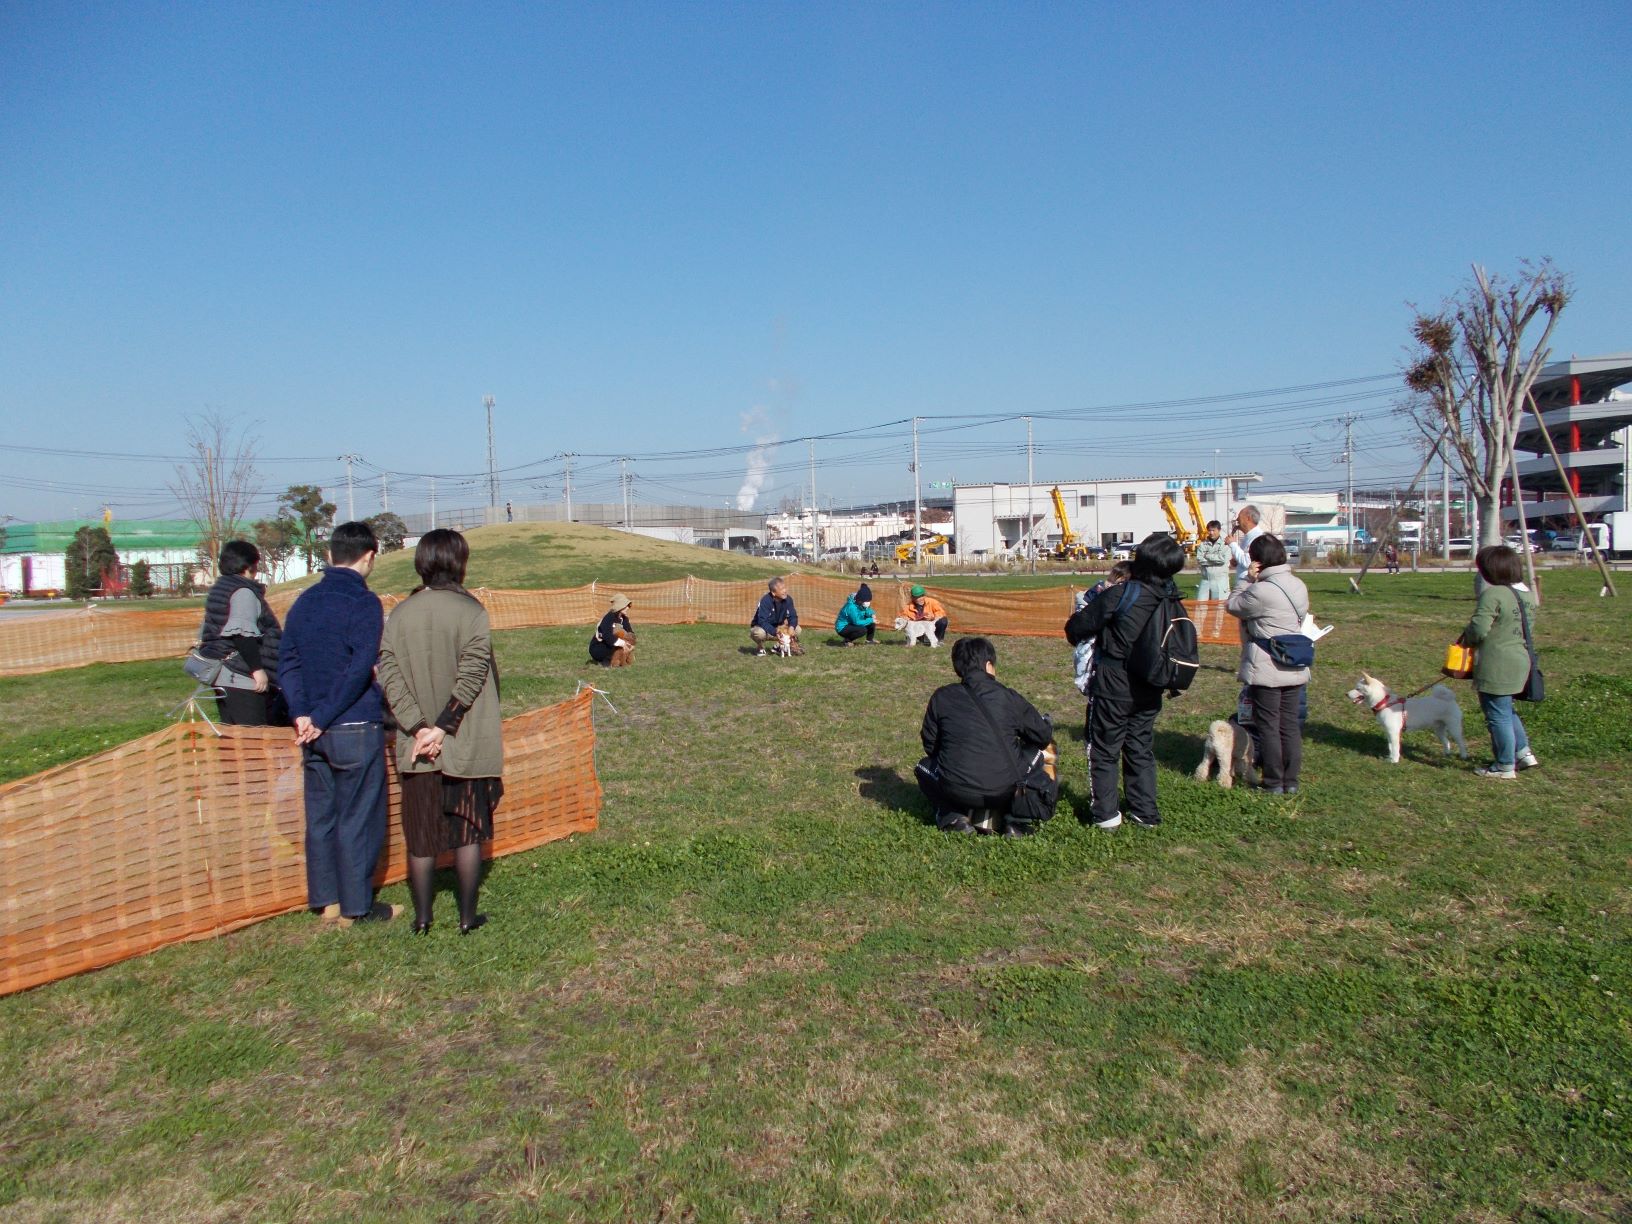 芝生の上に設置されたオレンジ色の囲いの中に犬をつれた人達が円になり講師の話を聞いている様子を正面から撮影した写真